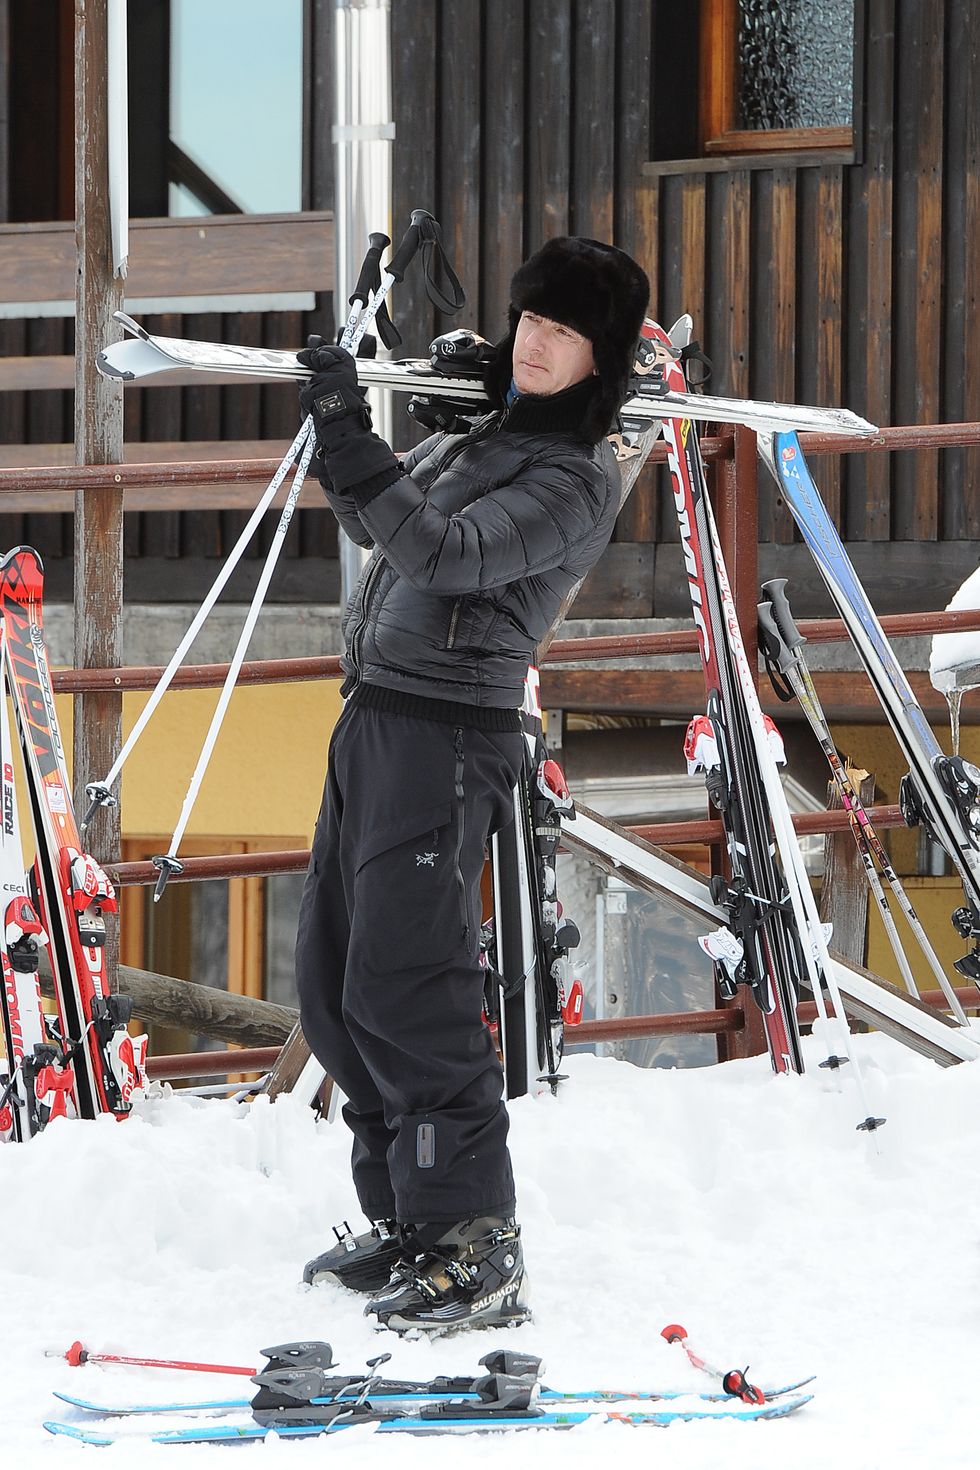 Winter, Winter sport, Ski, Ski Equipment, Snow, Skier, Ski binding, Ski boot, Ladder, Ski pole, 